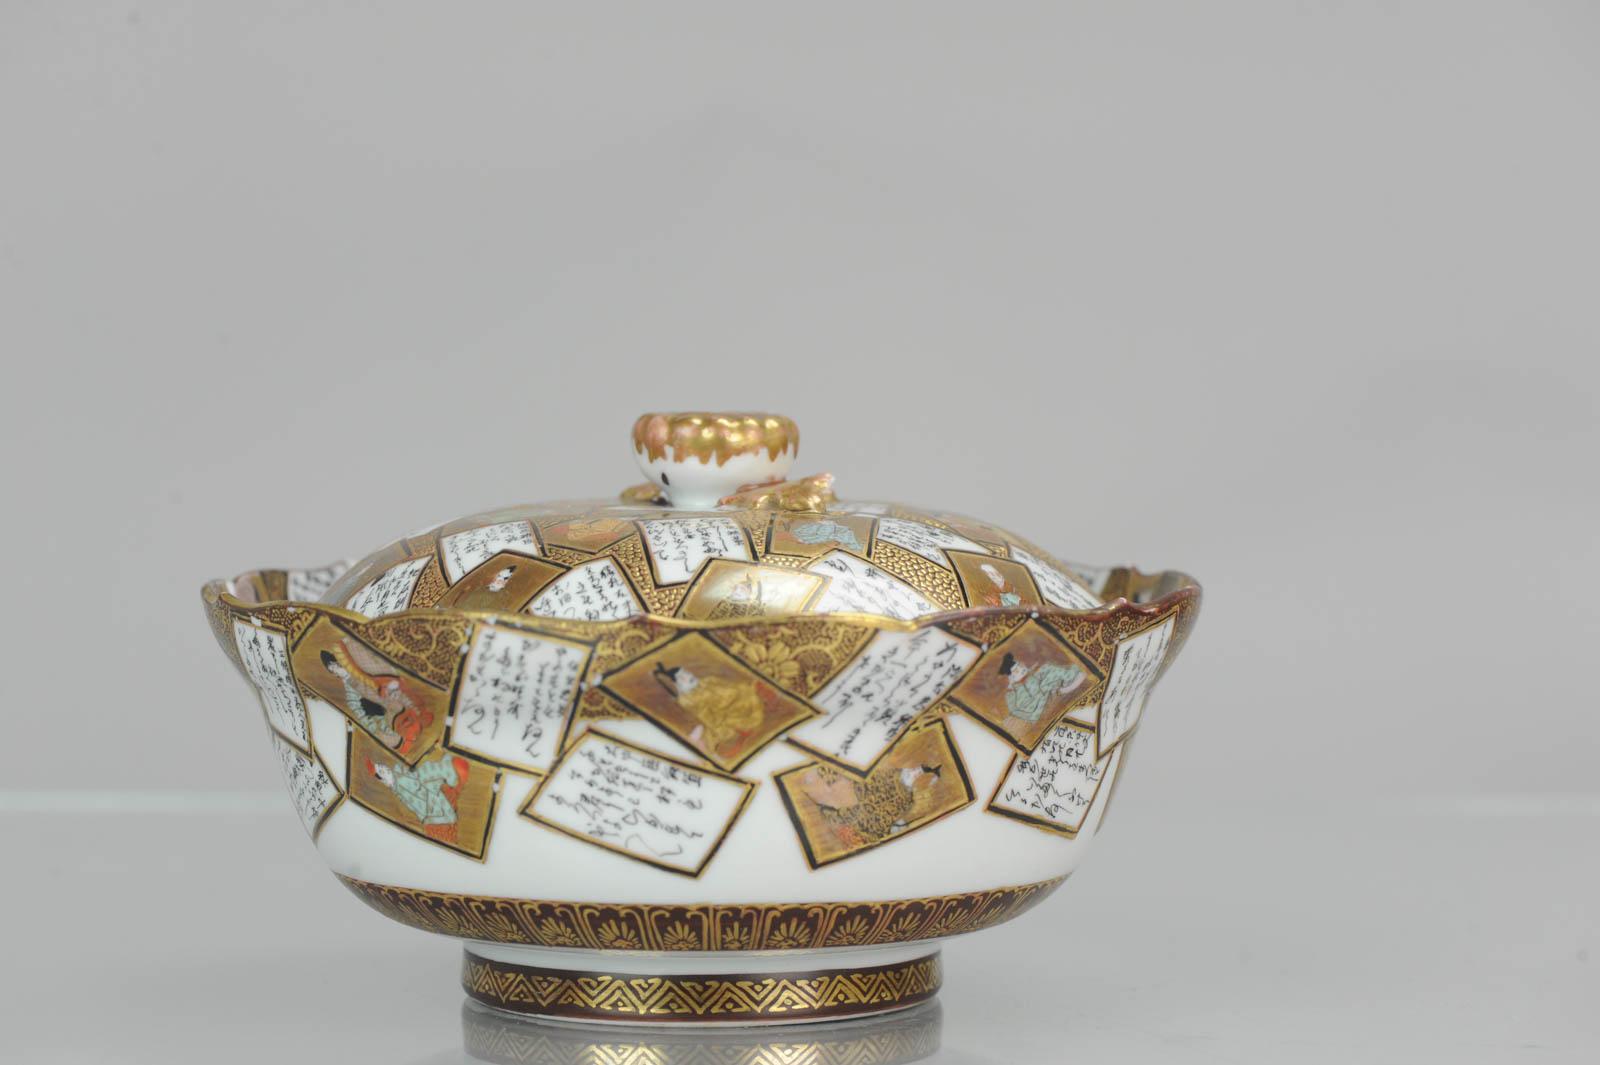 Earthenware Antique 19th Century Japanese Kaga Kutani Bowl with Lid Japanese Satsuma Style